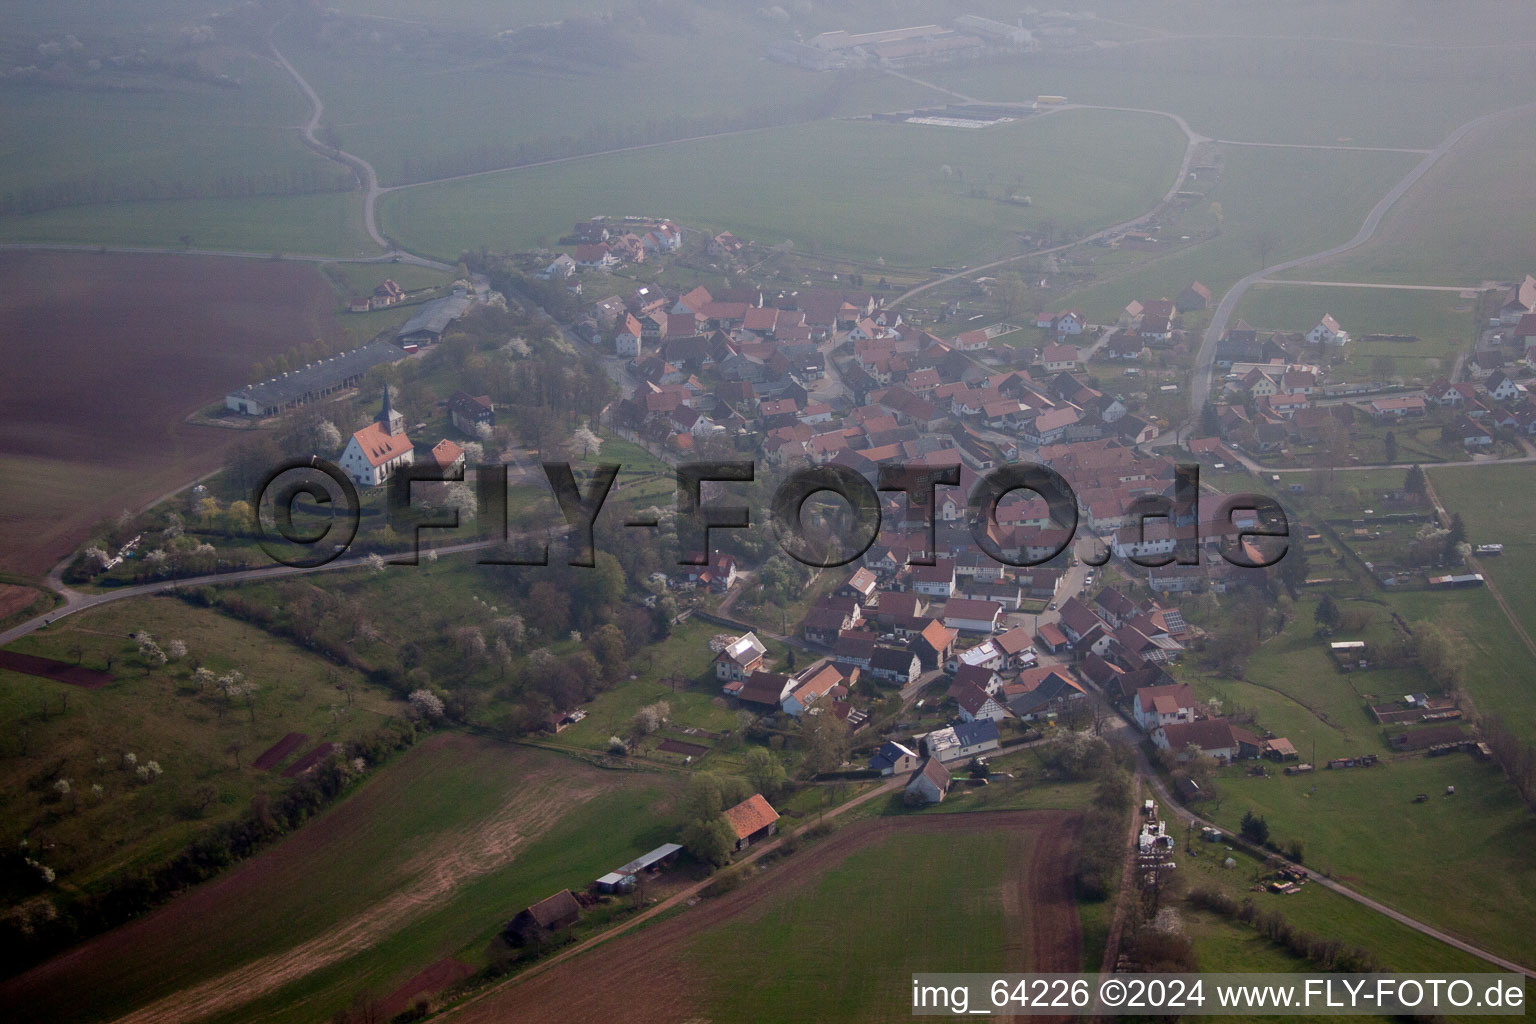 Vue aérienne de Rieth dans le département Thuringe, Allemagne